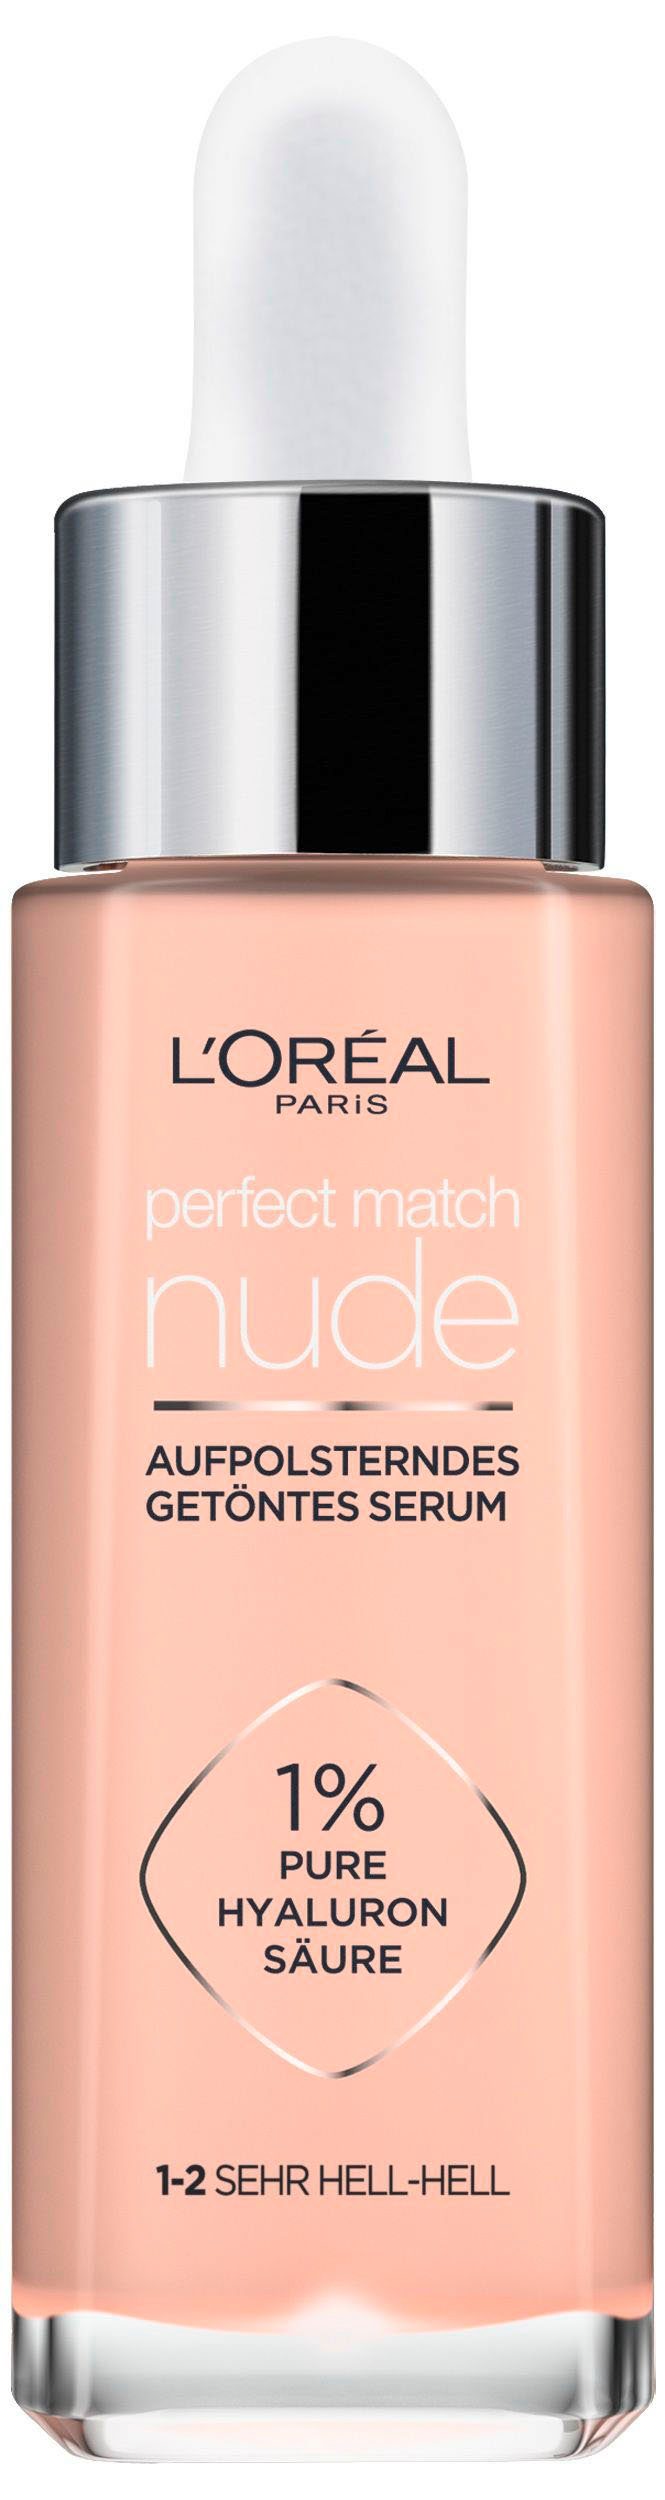 L'ORÉAL PARIS Gesichtsserum Match Hyaloron mit Serum, Perfect L'Oréal Paris Getöntes